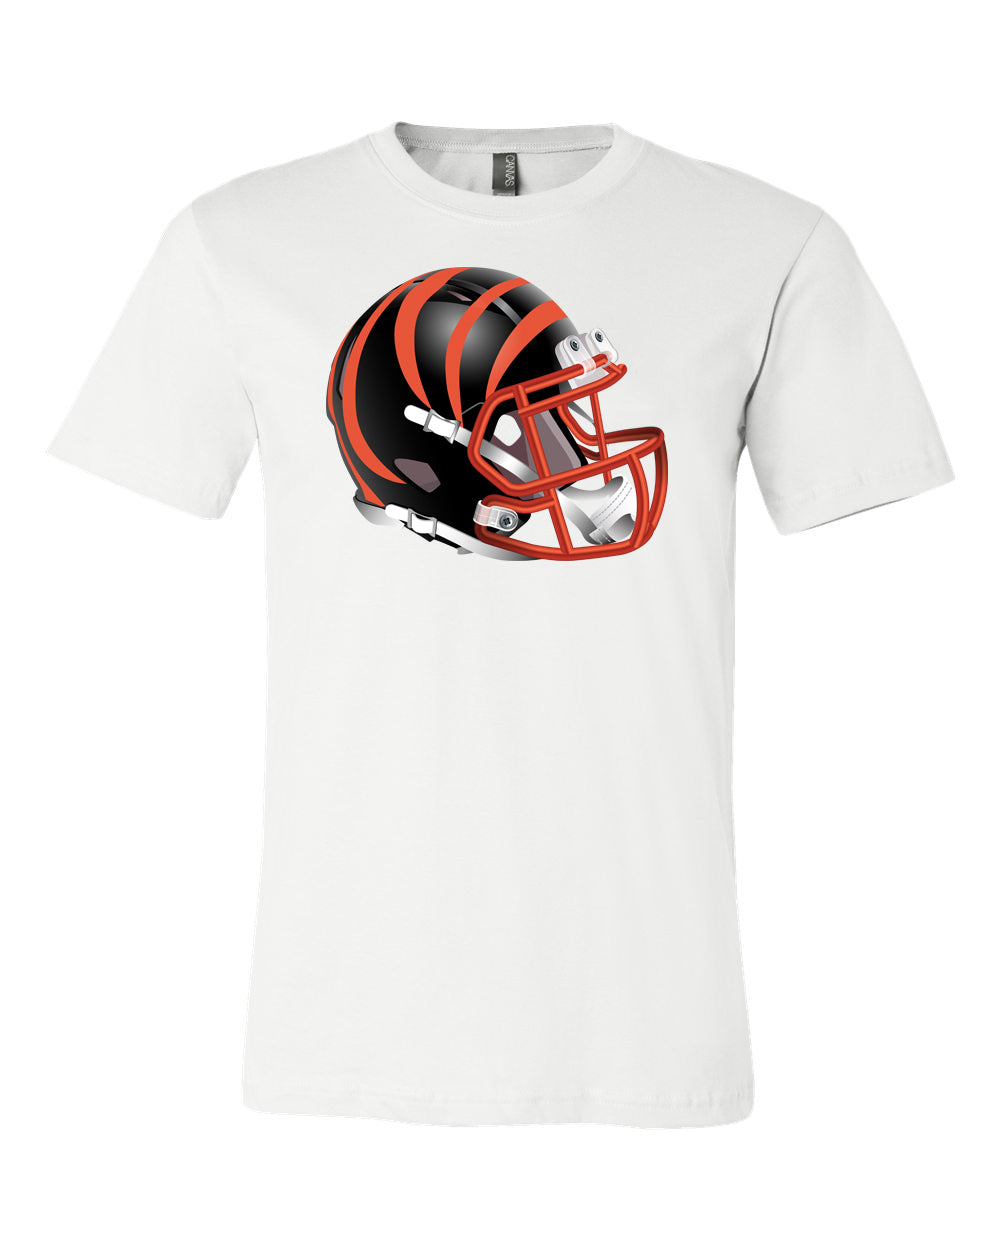 Cincinnati Bengals Elite Helmet Team Shirt jersey shirt 